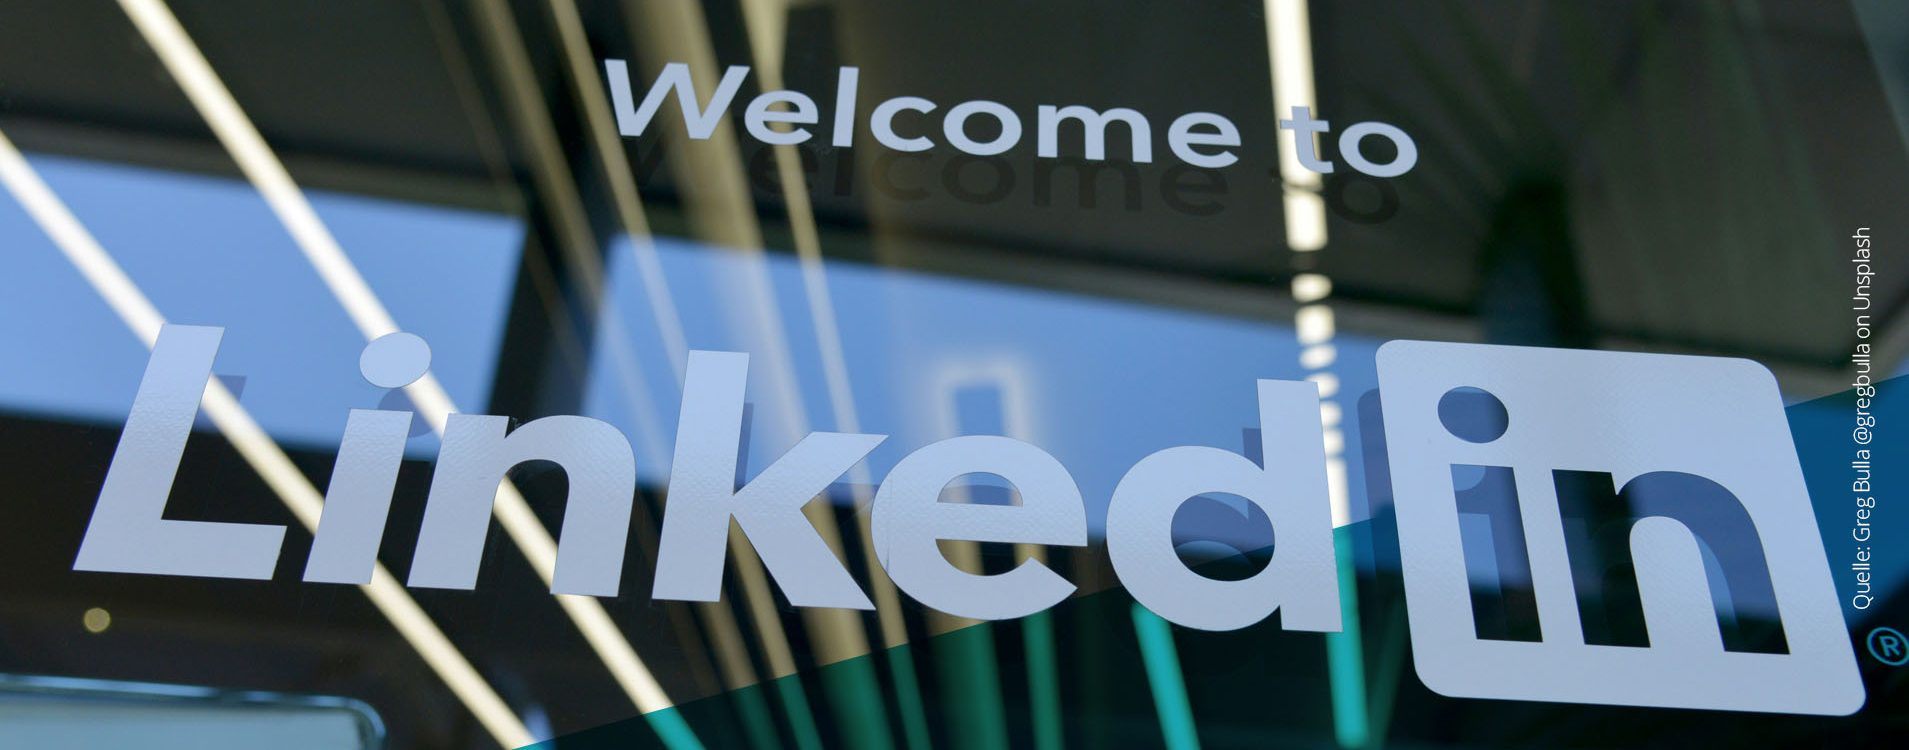 Glasscheibe mit Schriftzug "Welcome to LinkedIn"